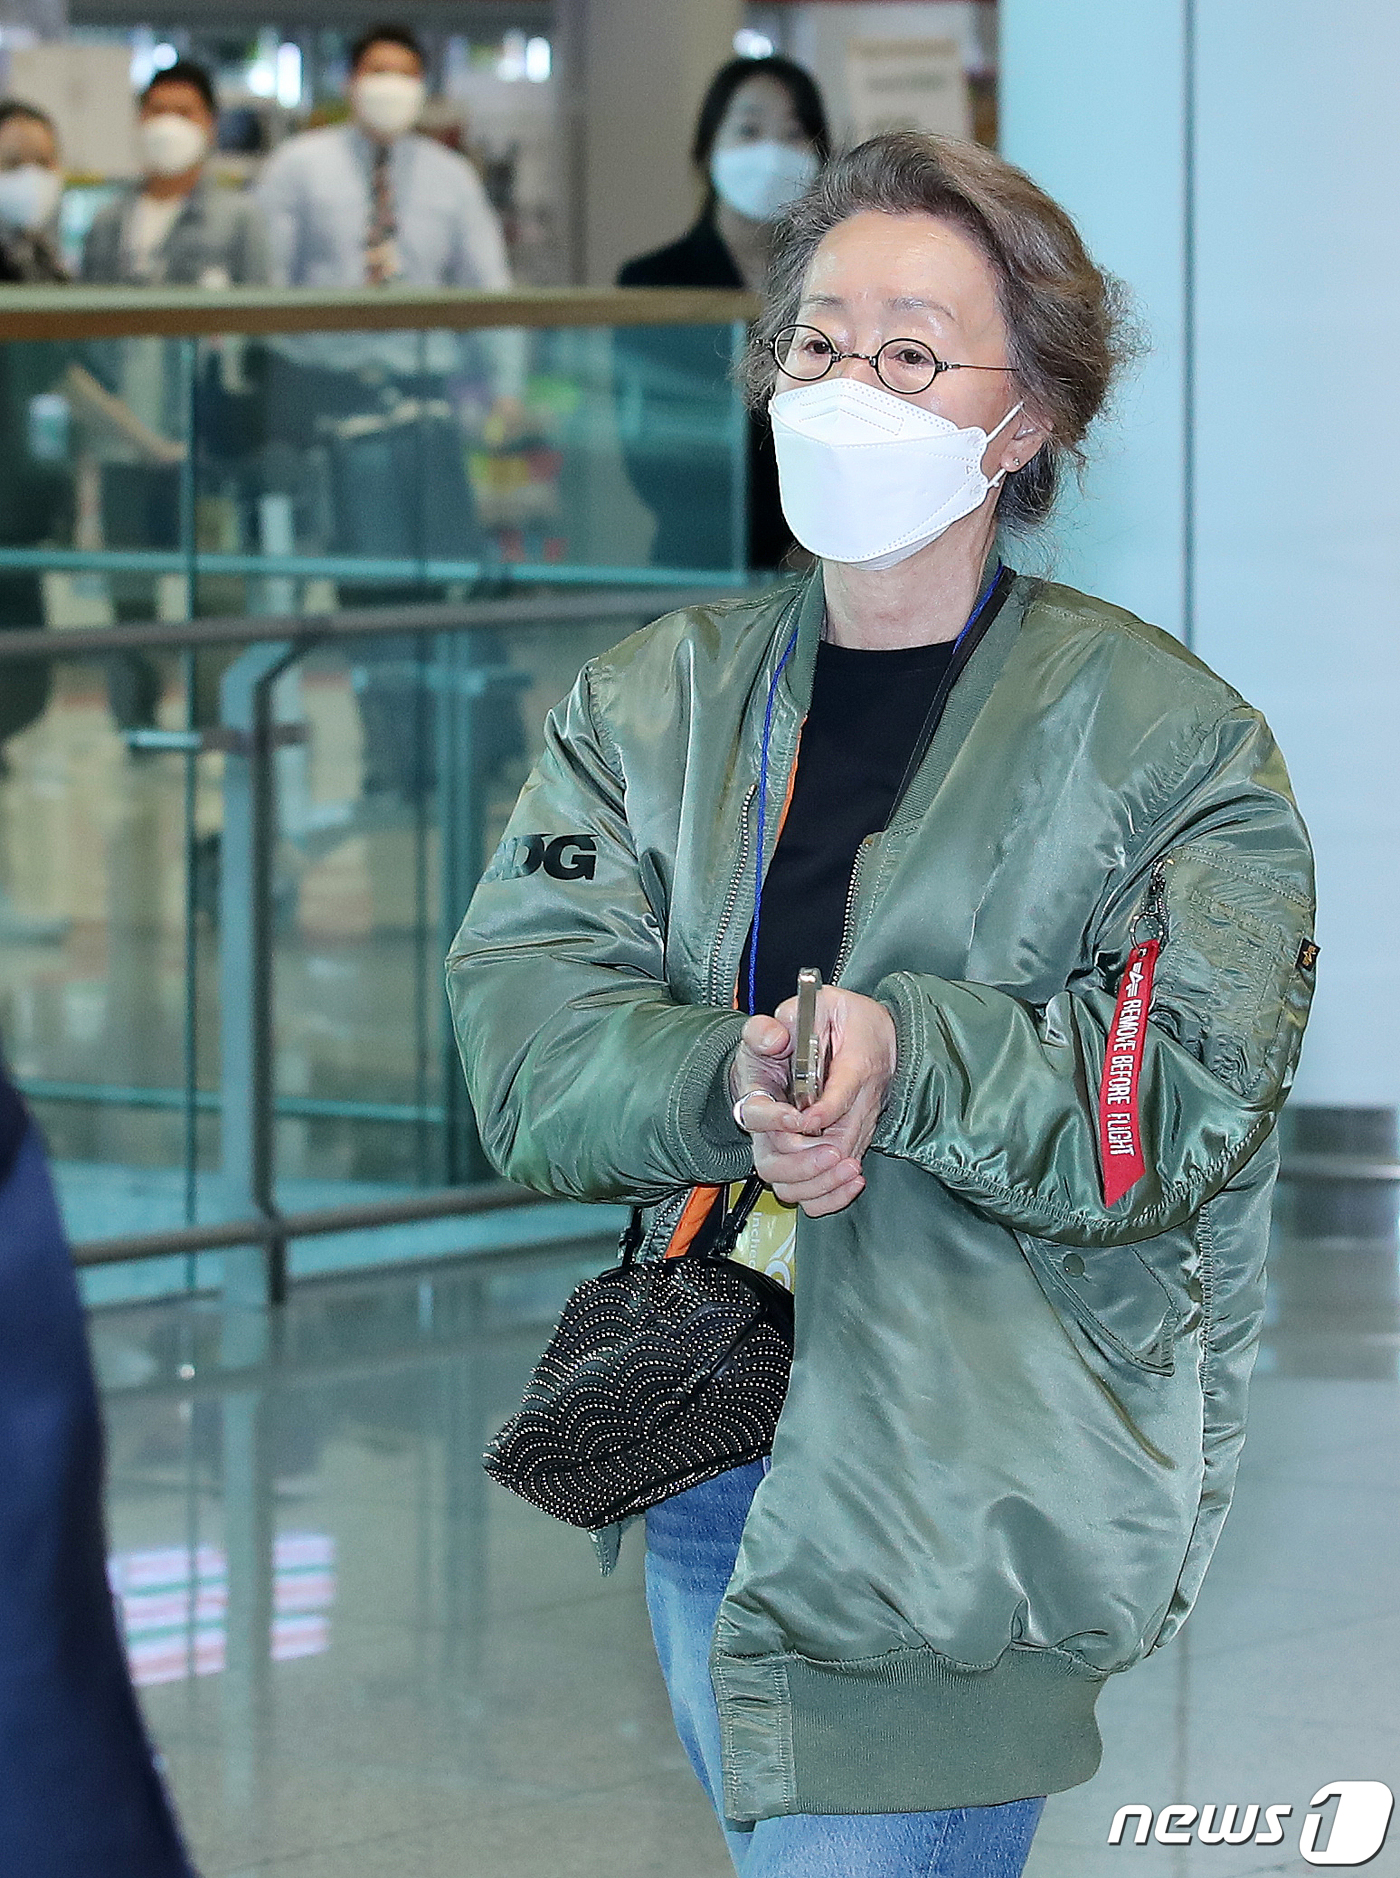 Sao nữ 74 tuổi đã có mặt ở sân bay Hàn Quốc sau chiến thắng lịch sử tại Oscar, phong cách ăn mặc khiến Knet ngỡ ngàng - Ảnh 4.